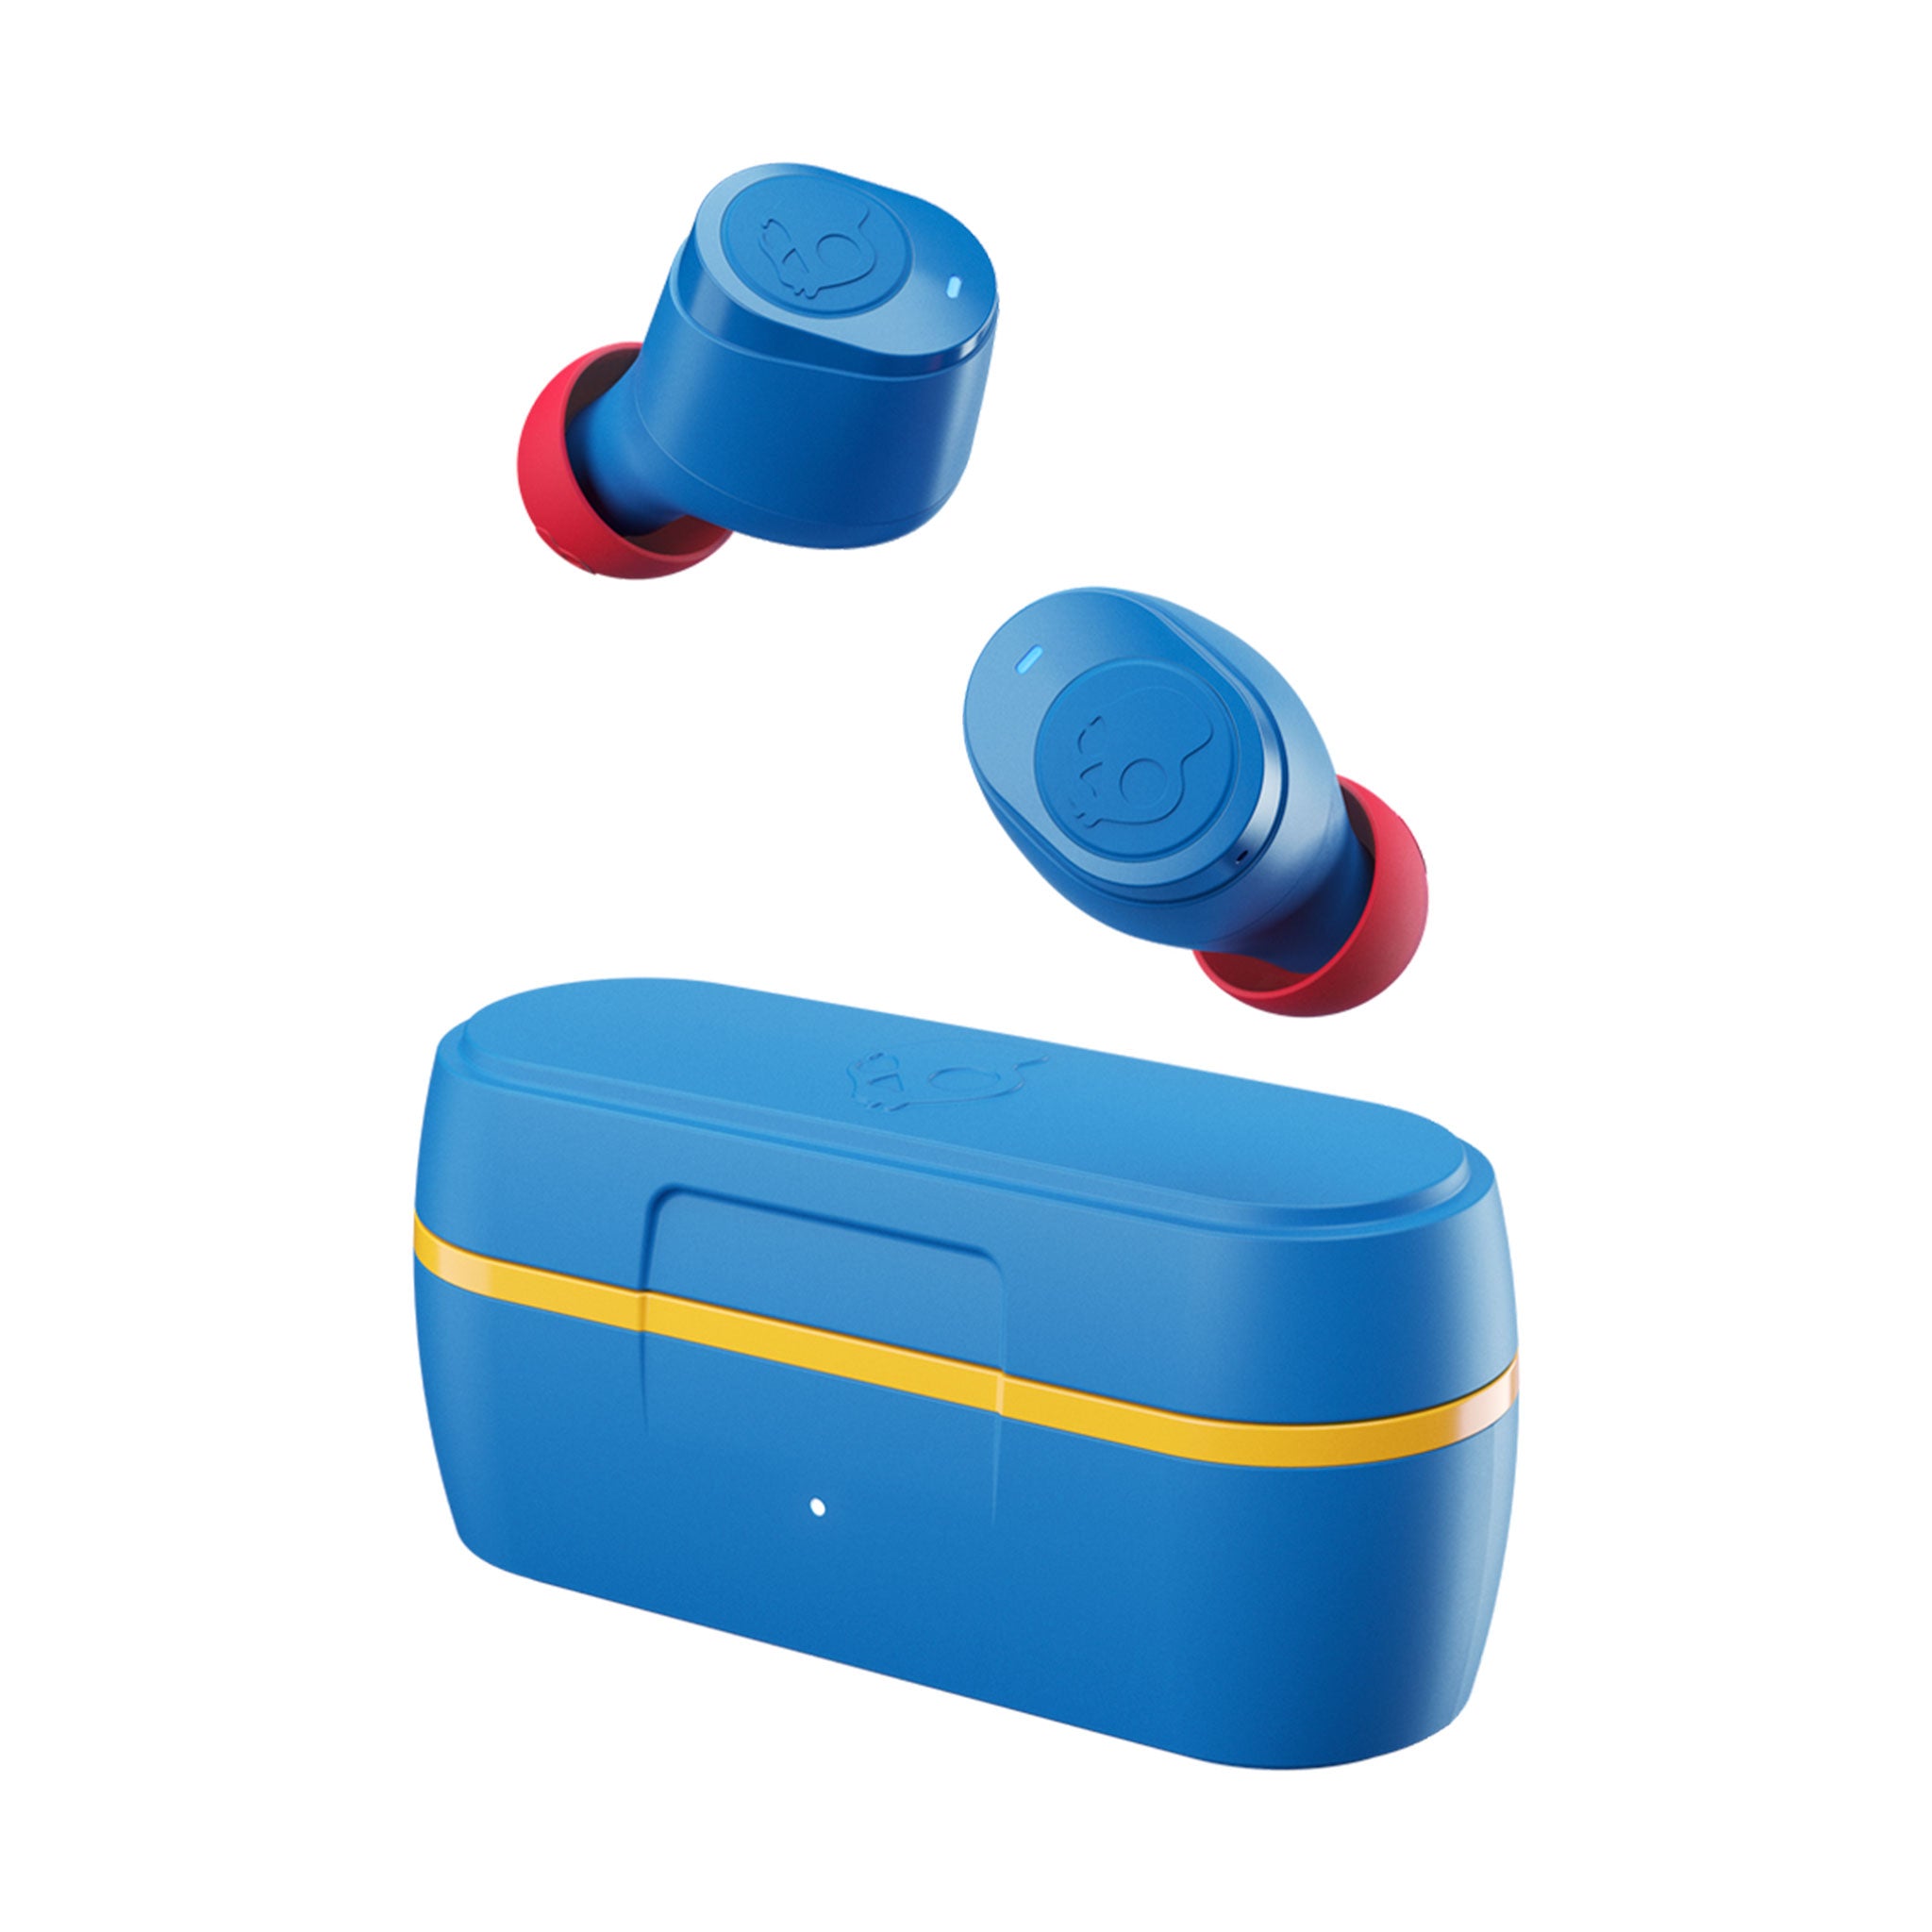 Skullcandy - Jib True Wireless In Ear Headphones - 92 Blue